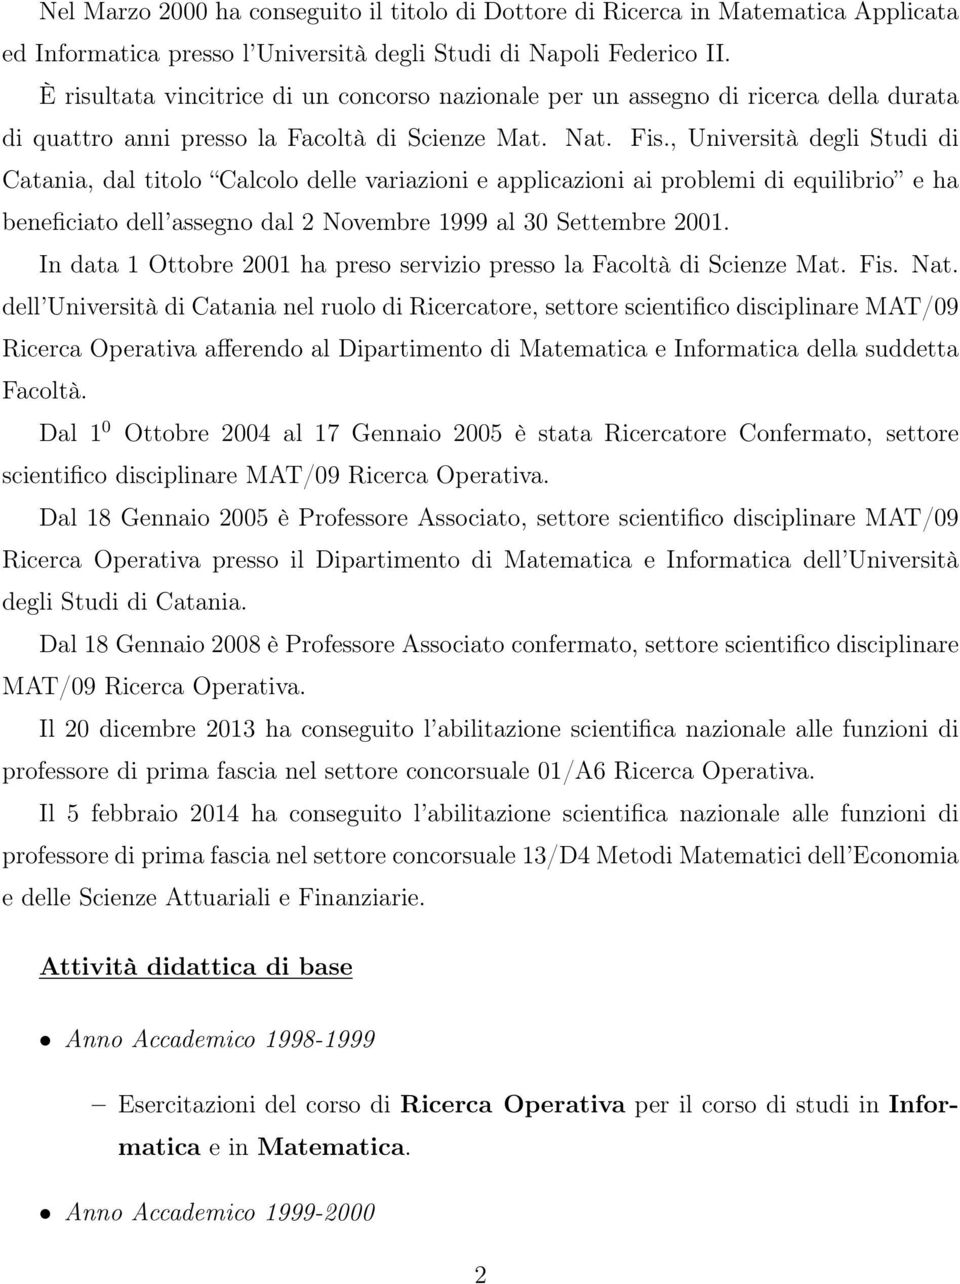 , Università degli Studi di Catania, dal titolo Calcolo delle variazioni e applicazioni ai problemi di equilibrio e ha beneficiato dell assegno dal 2 Novembre 1999 al 30 Settembre 2001.